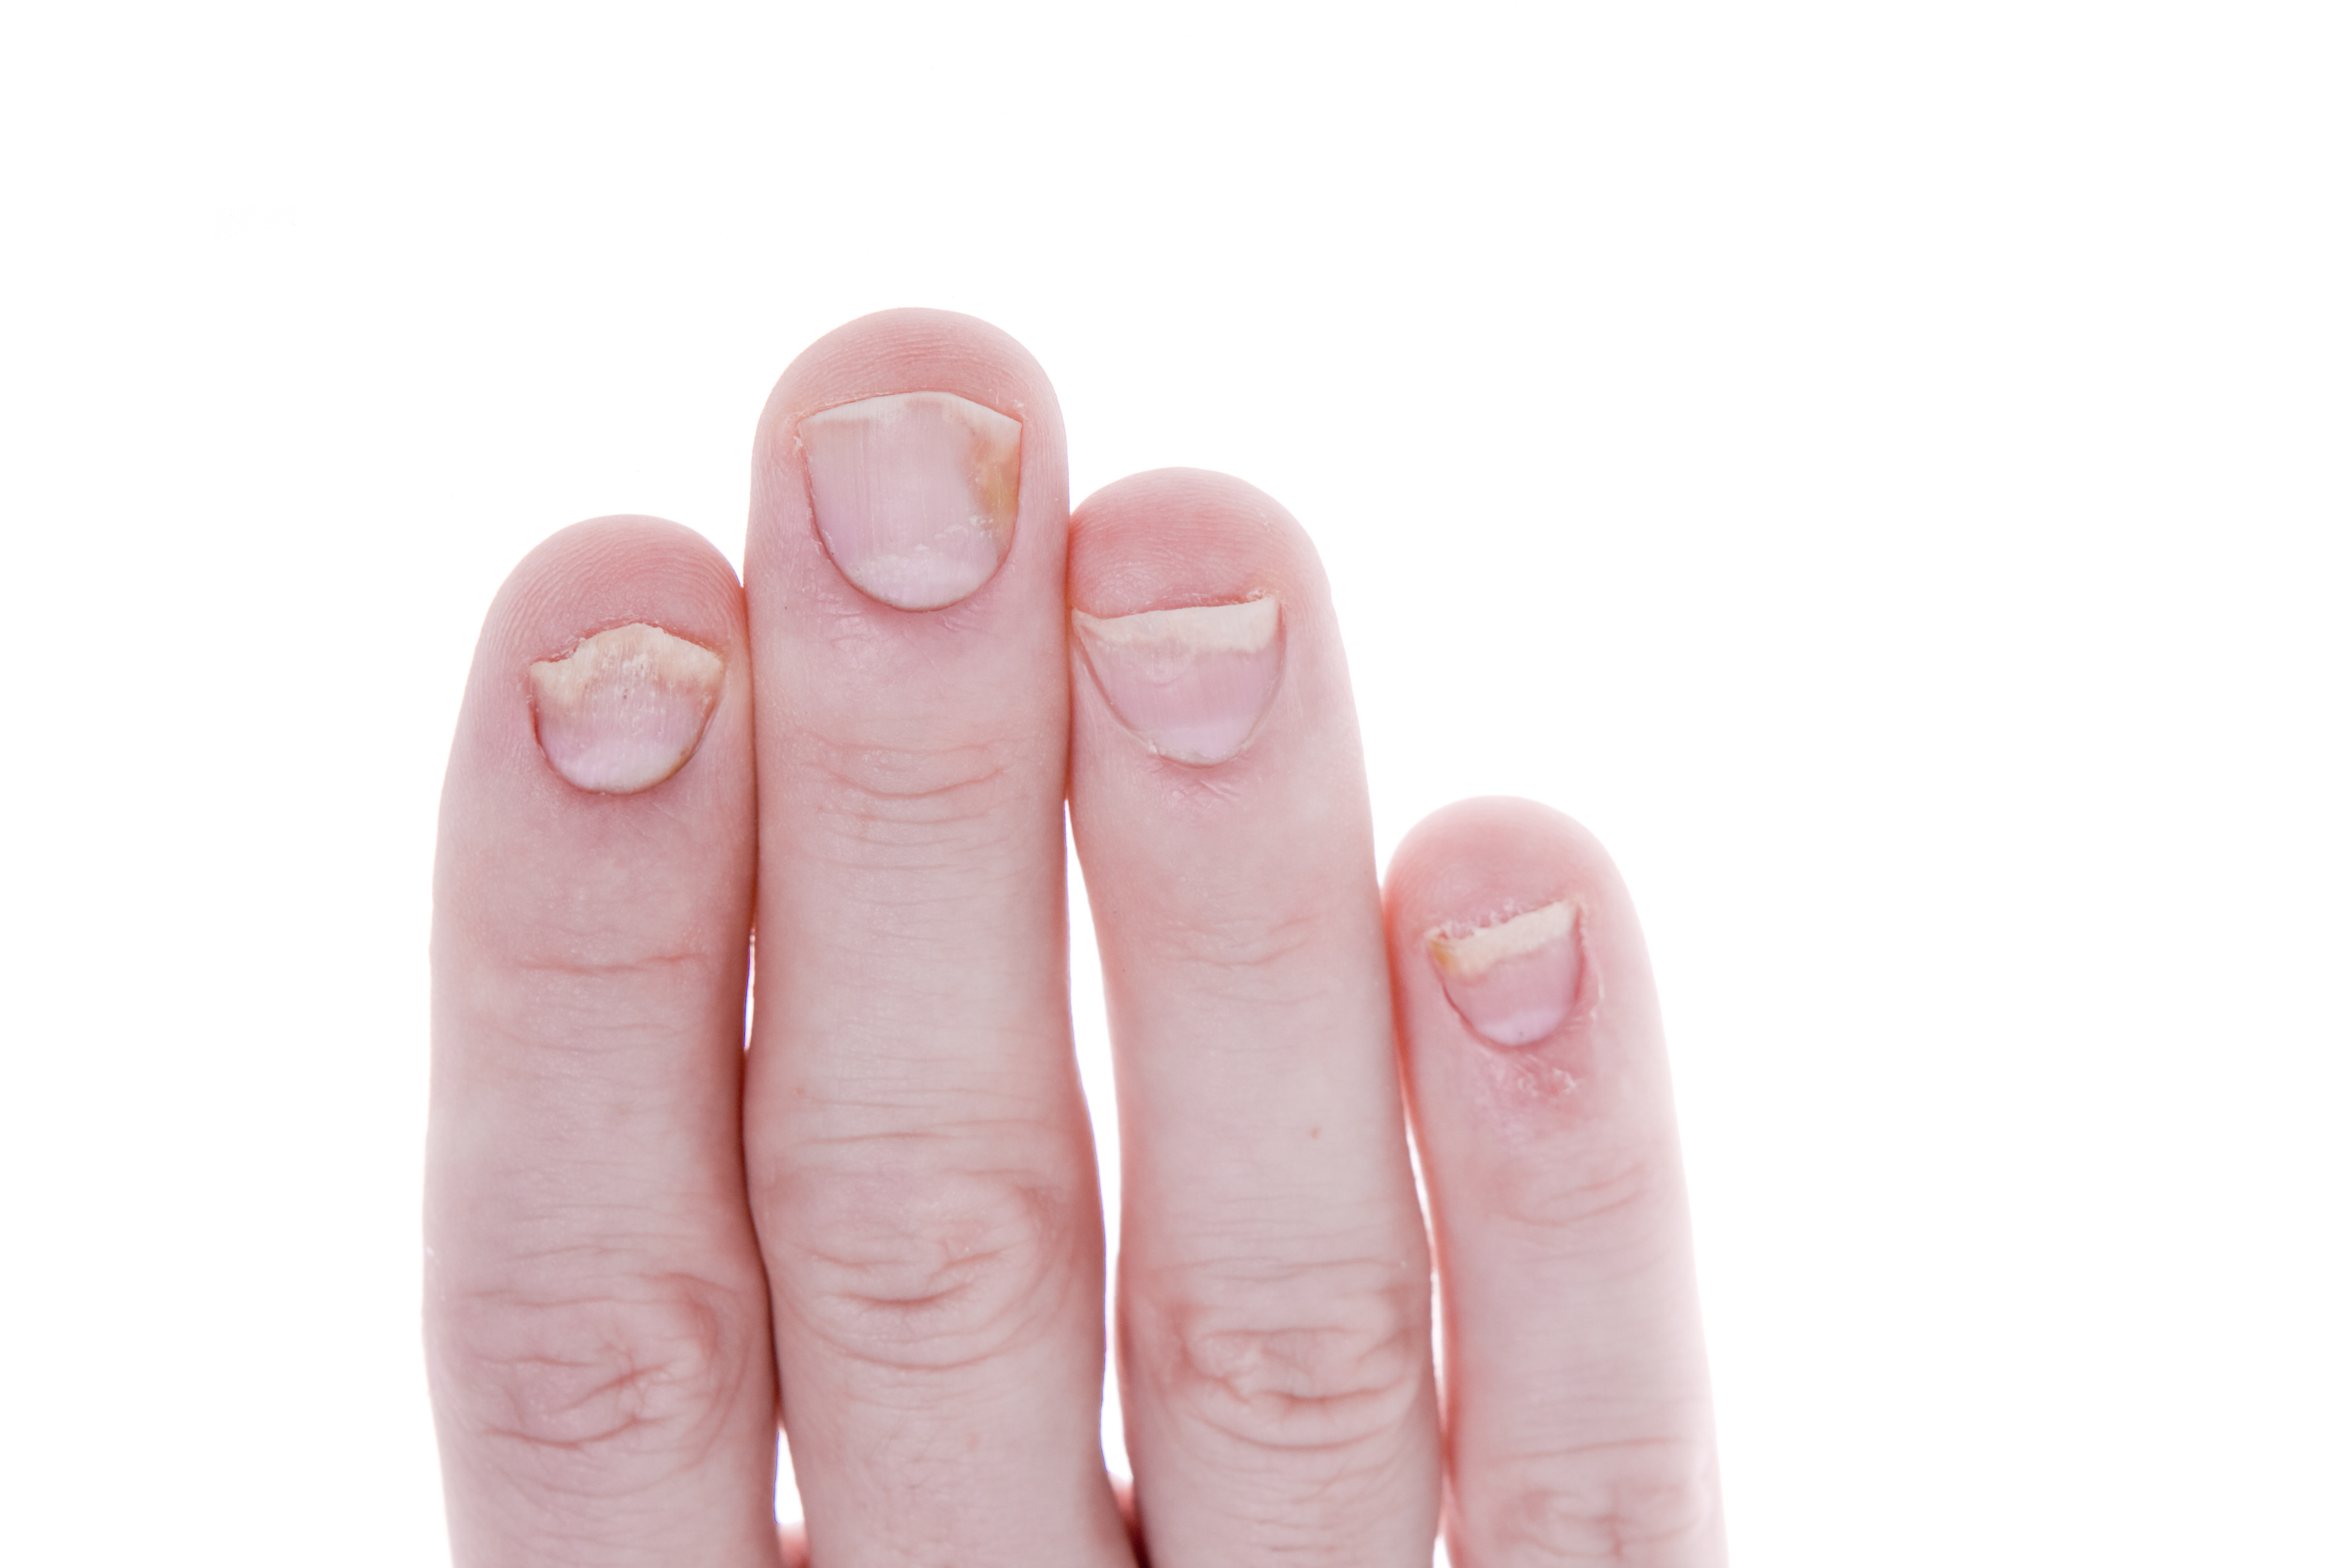 Fingernails Part 1 - What Your Fingernails Say About You ...